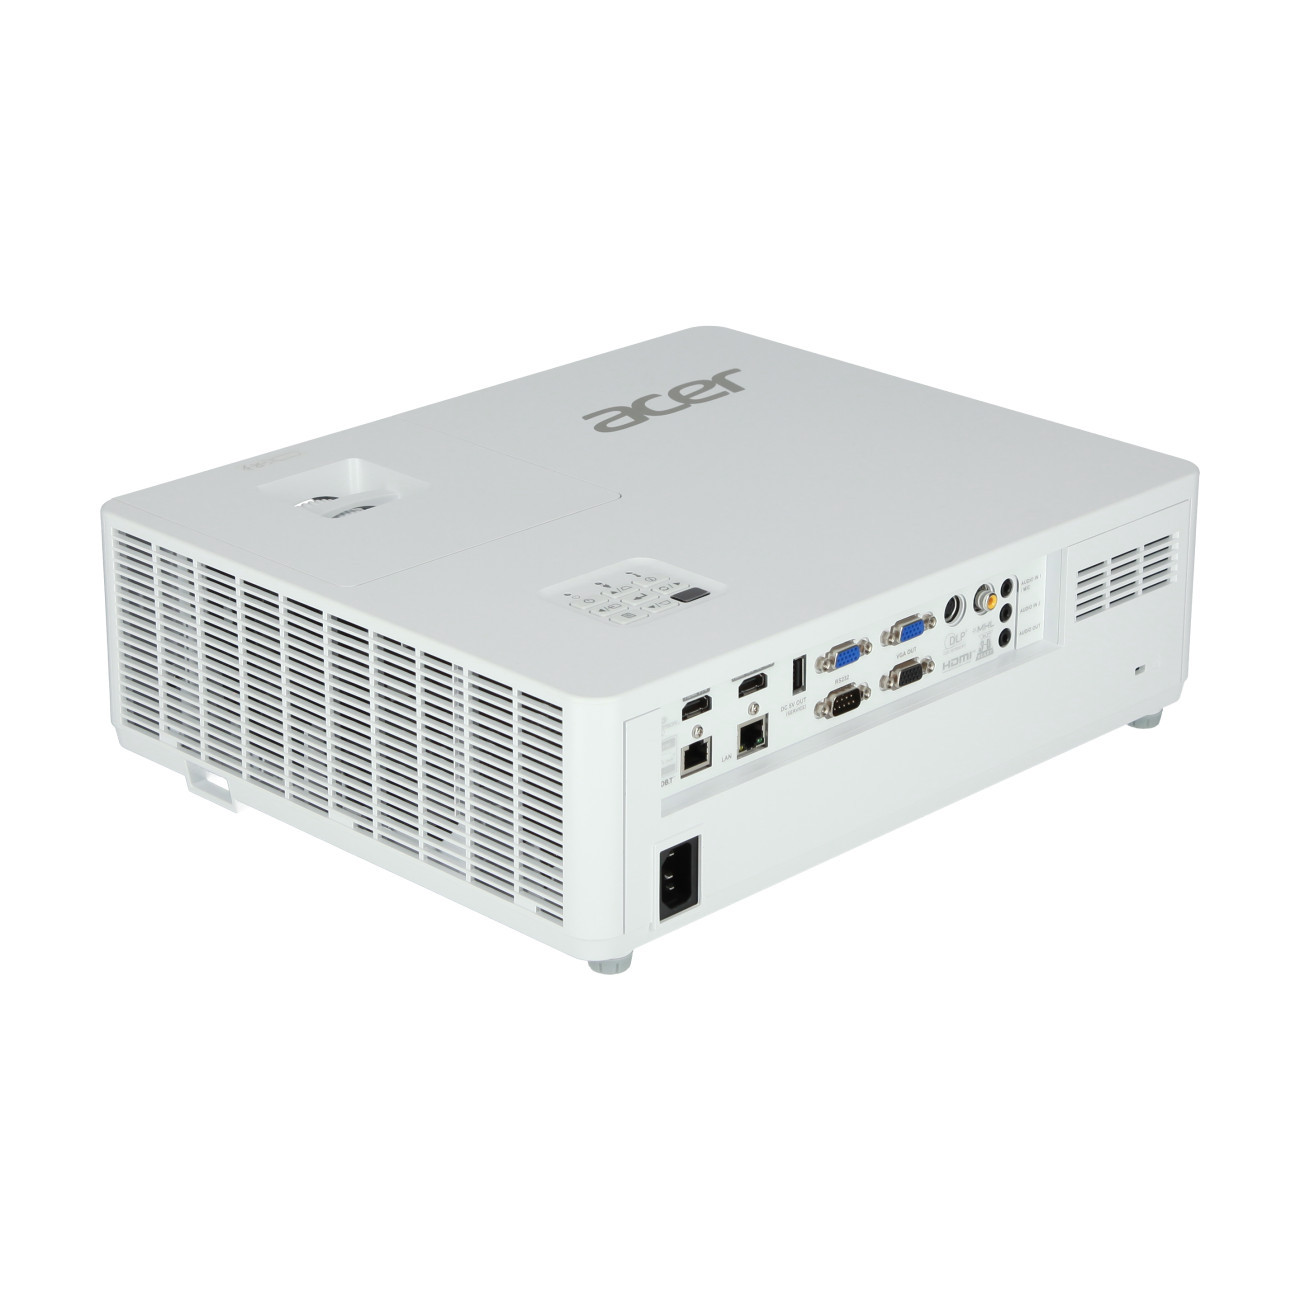 Vorschau: Acer PL6610T Installationsbeamer mit 5500 ANSI-Lumen und WUXGA Auflösung